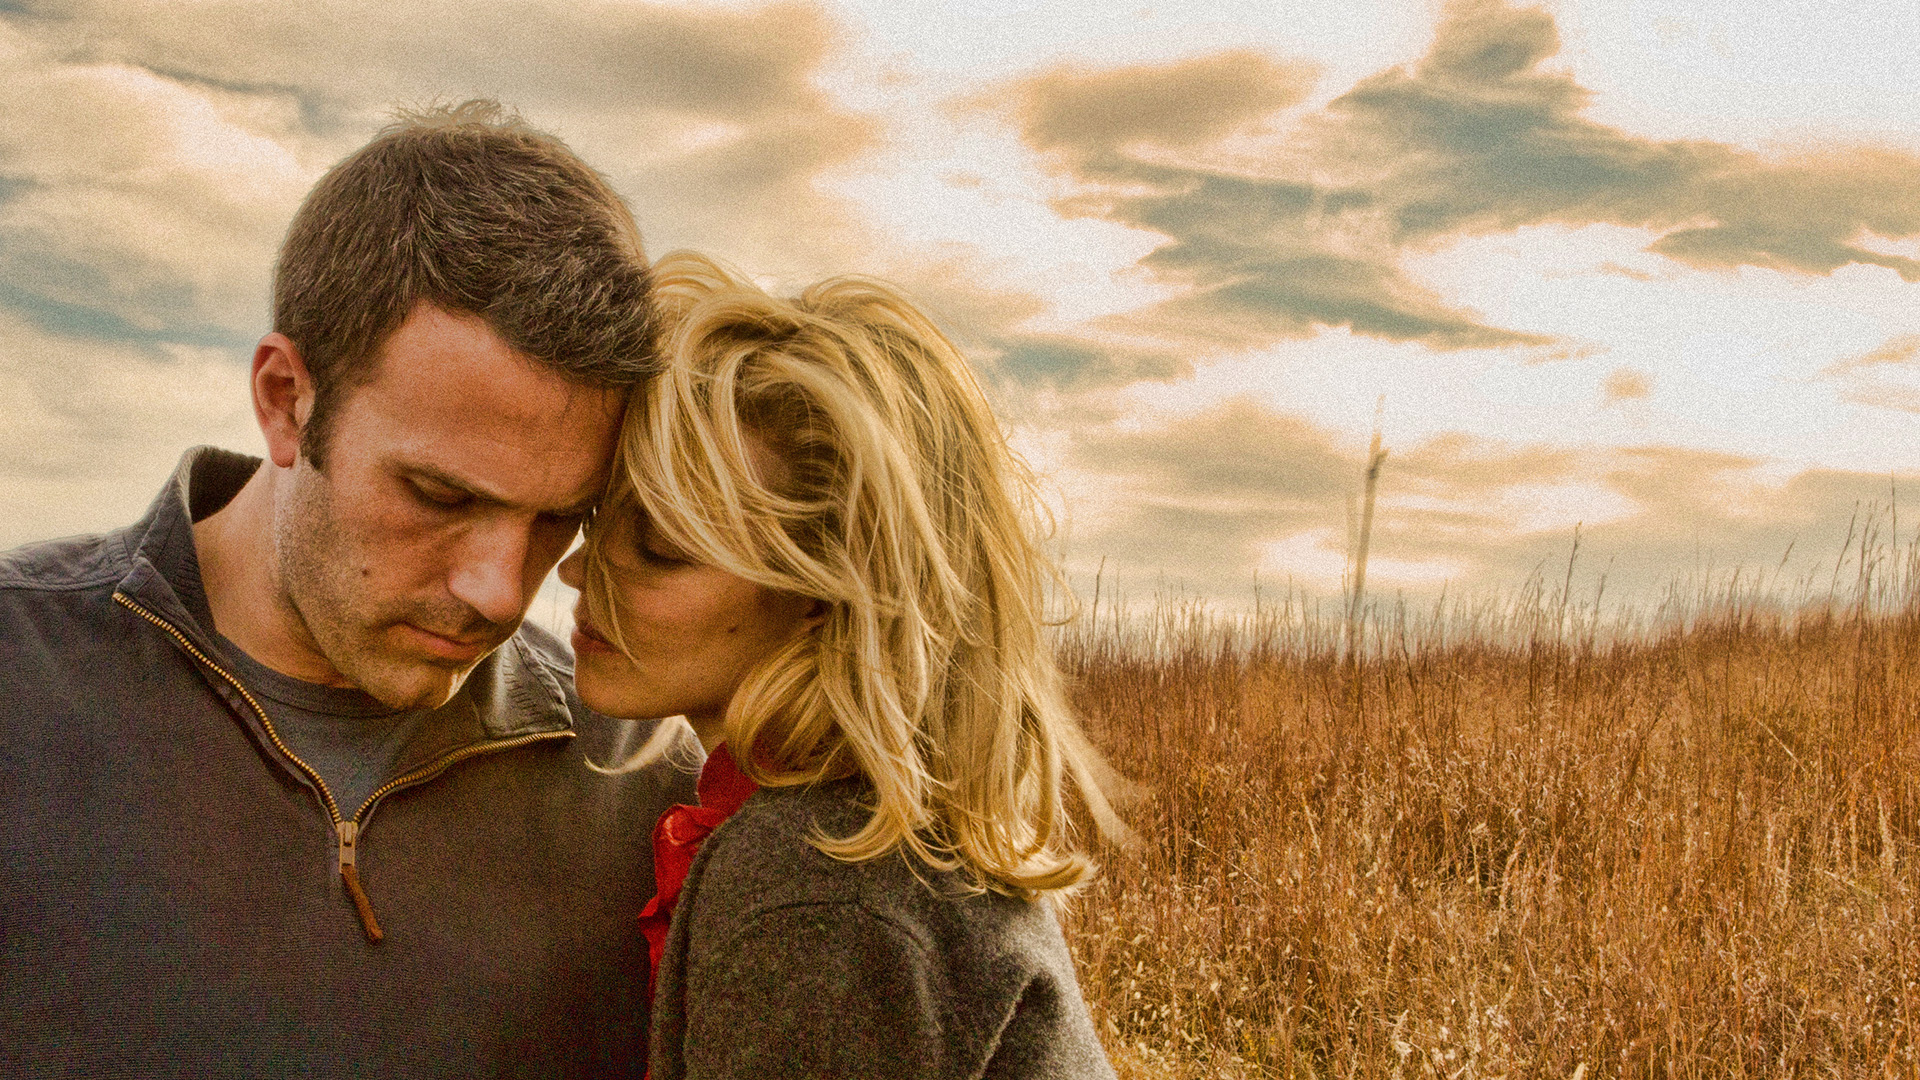 Ben Affleck and Rachel McAdams in a wheat field.